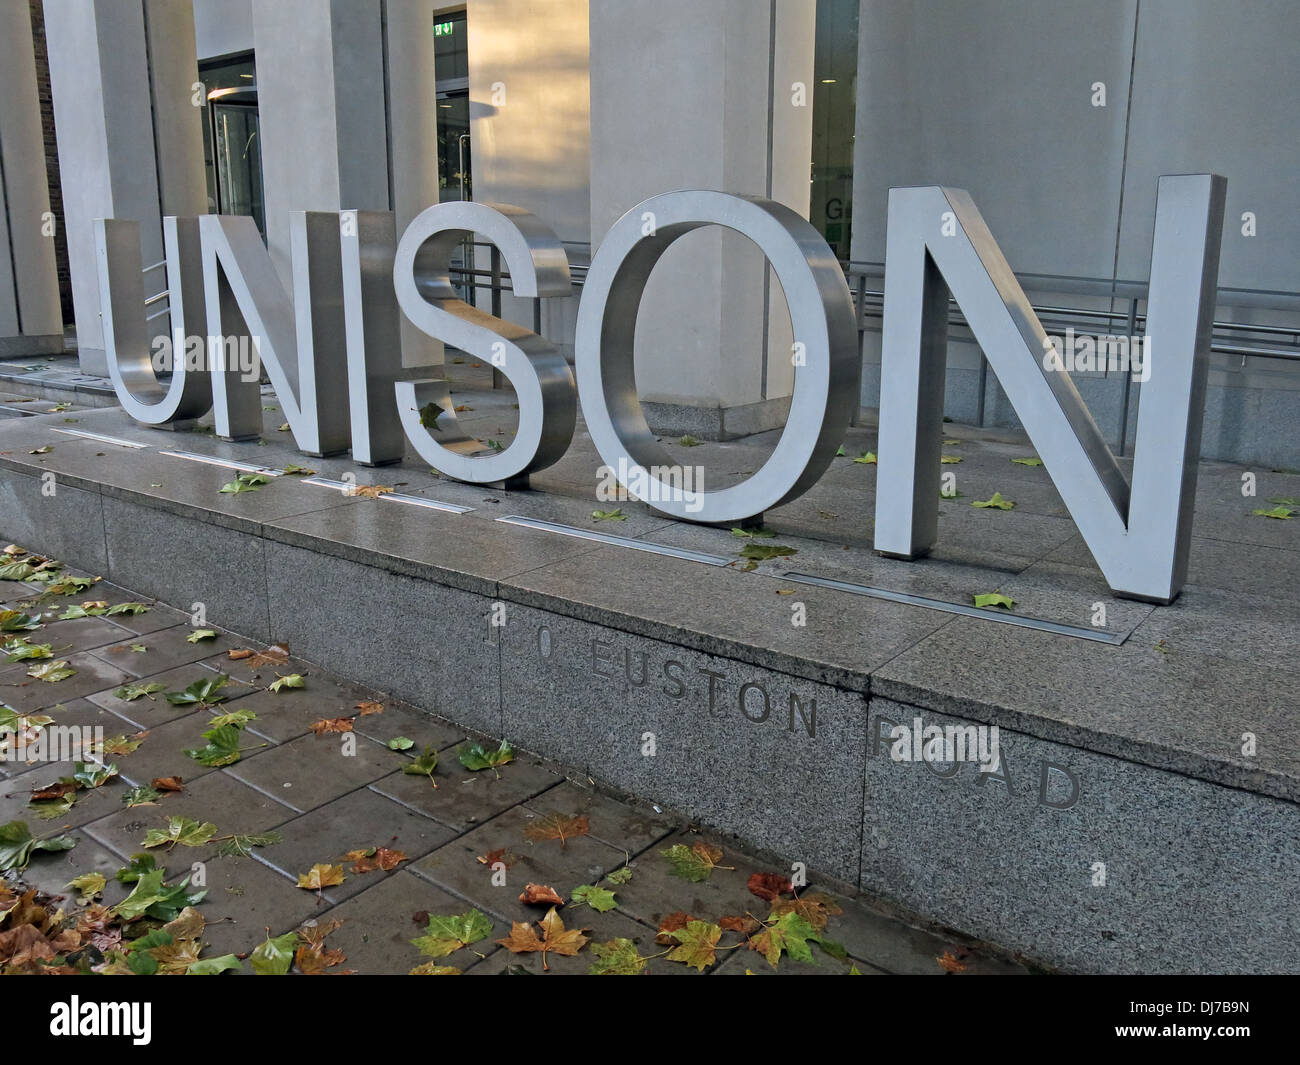 Unison trade union building, at 130 Euston Road, London England UK Stock Photo